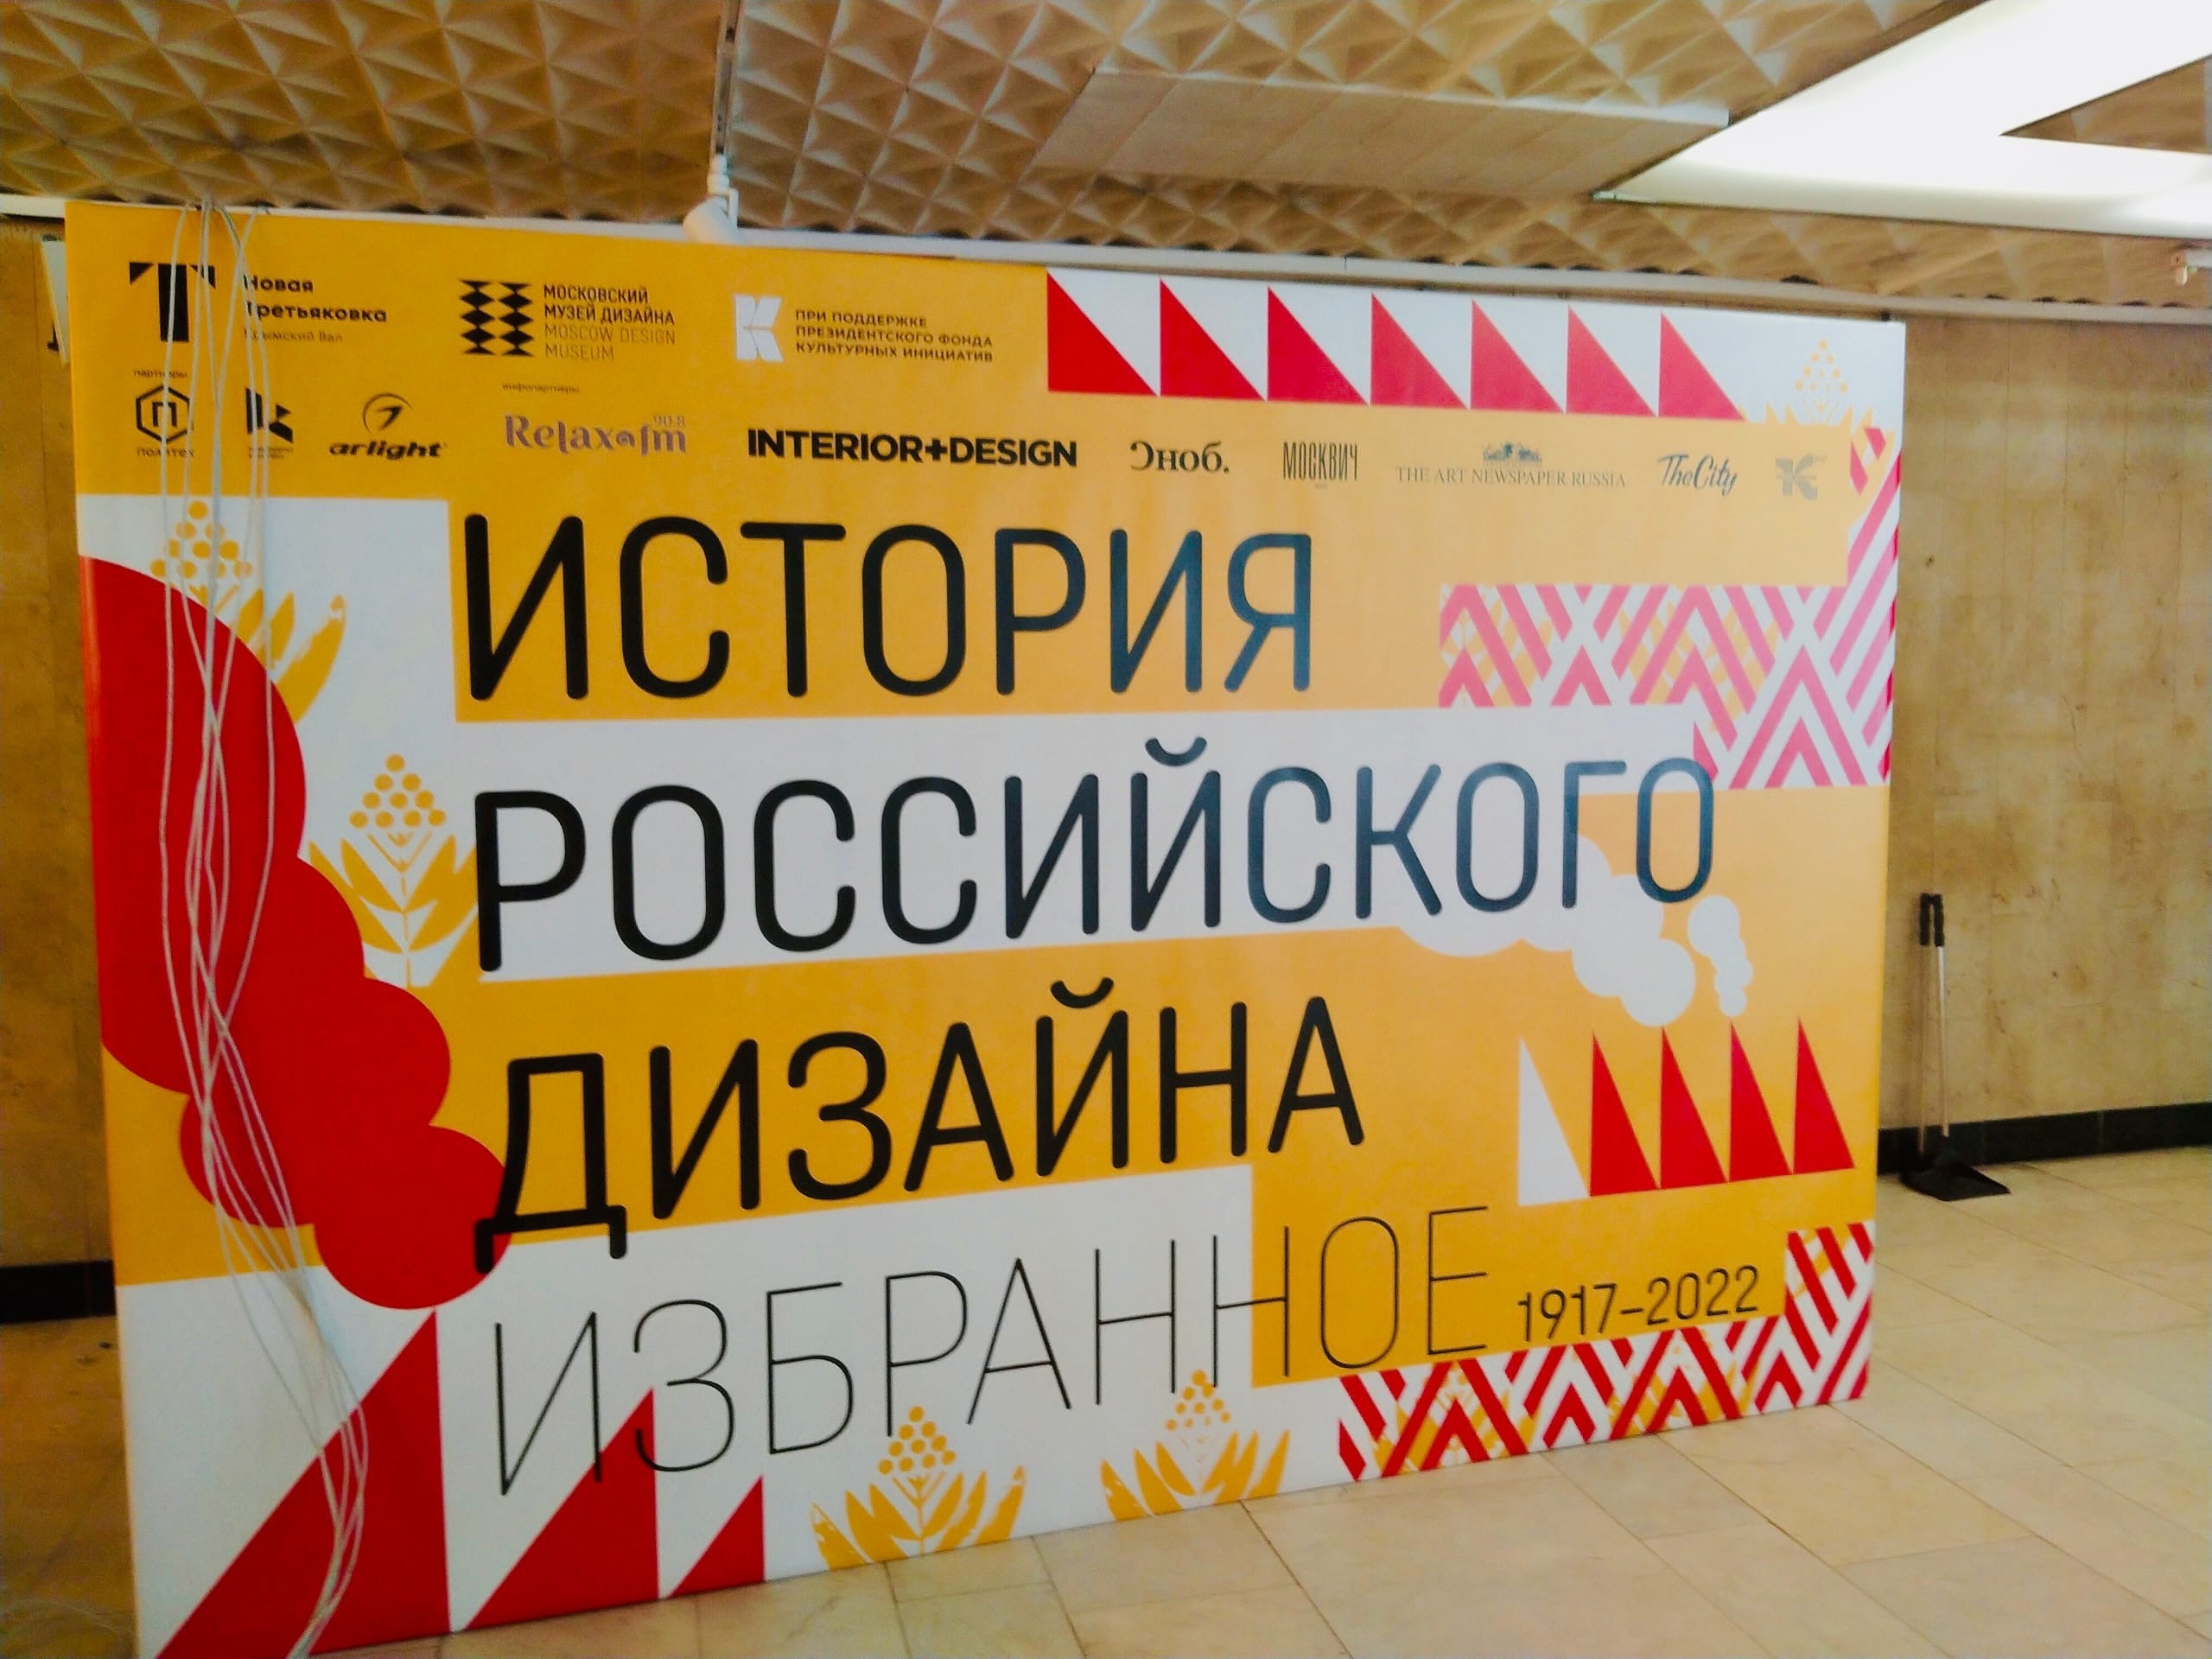 Работает выставка «История российского дизайна. Избранное» в Новой Третьяковки на Крымском Валу.